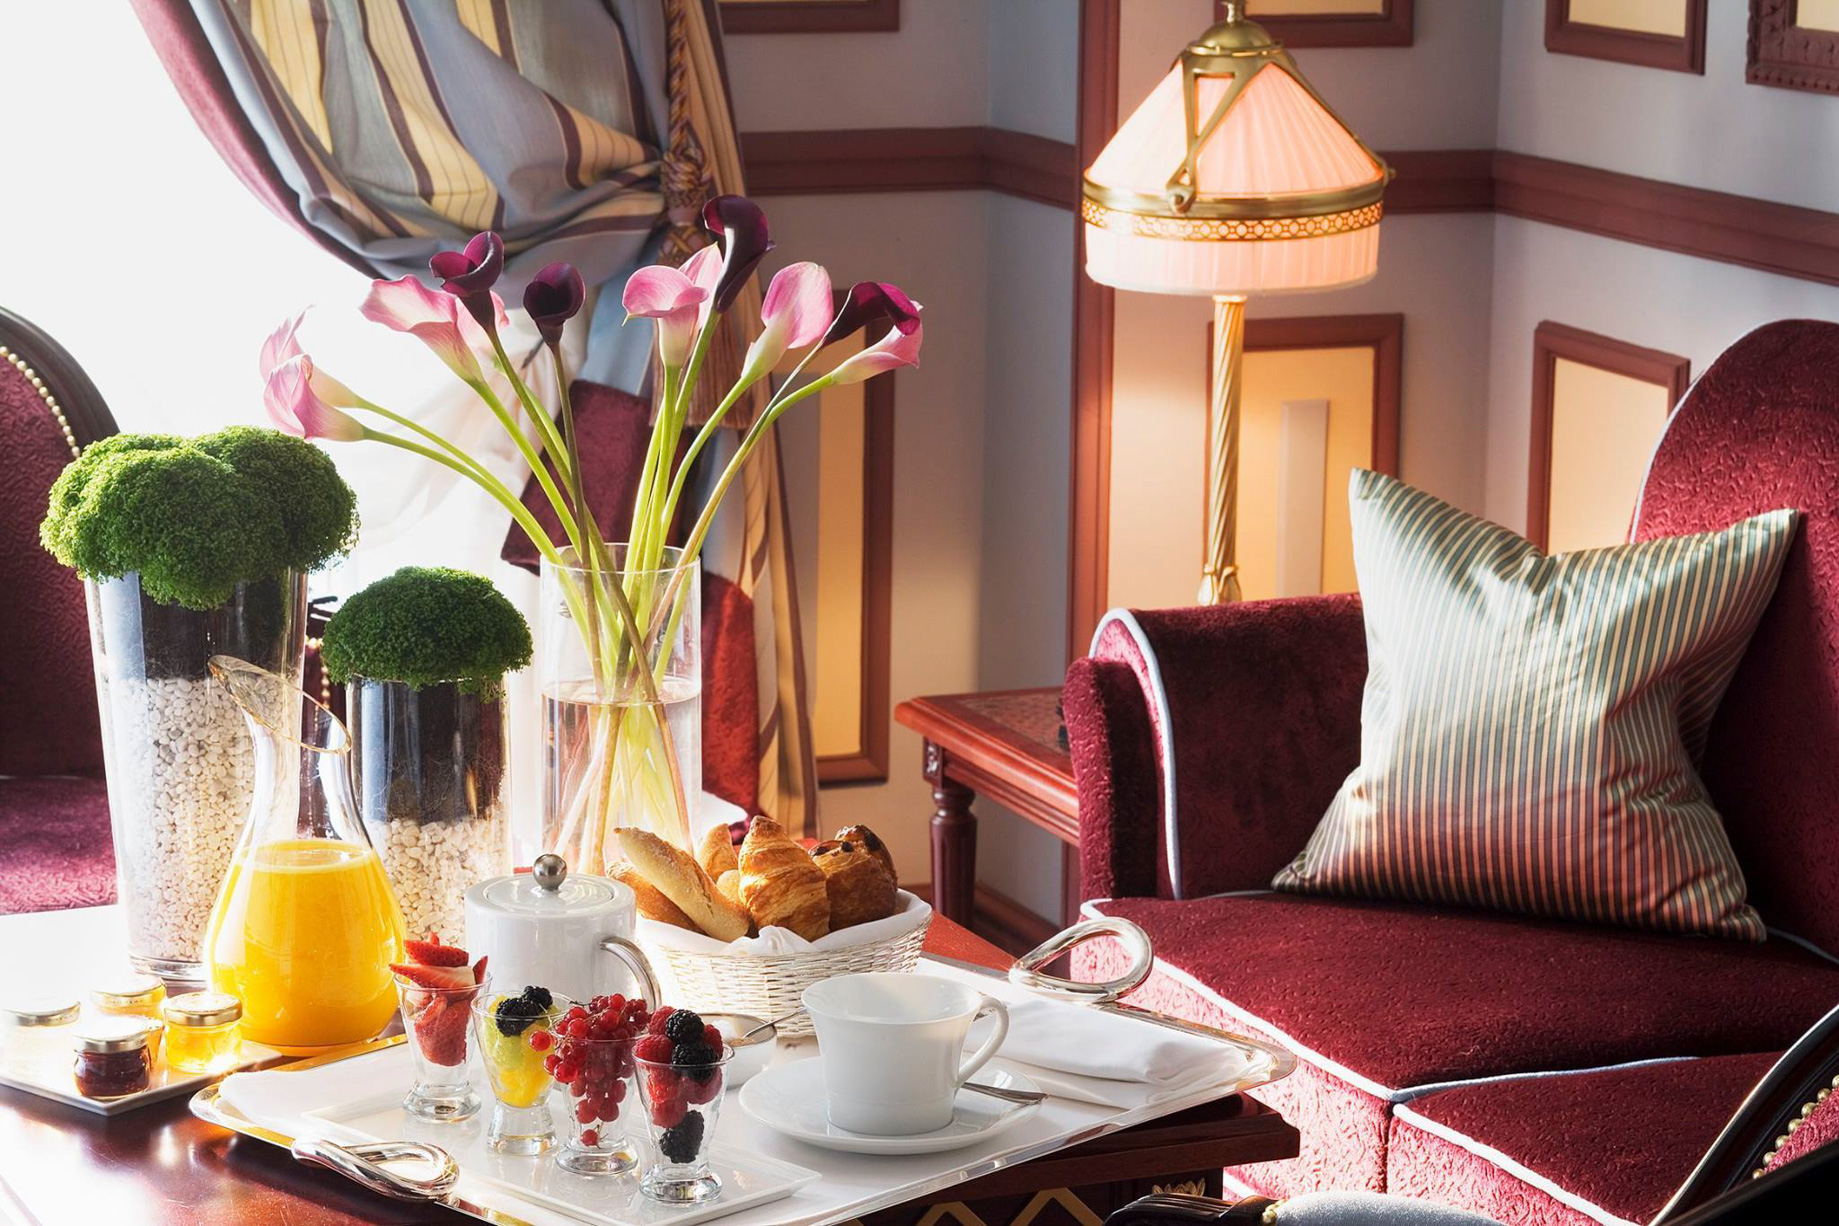 InterContinental Bordeaux Le Grand Hotel – Bordeaux, France – Royal Suite Breakfast